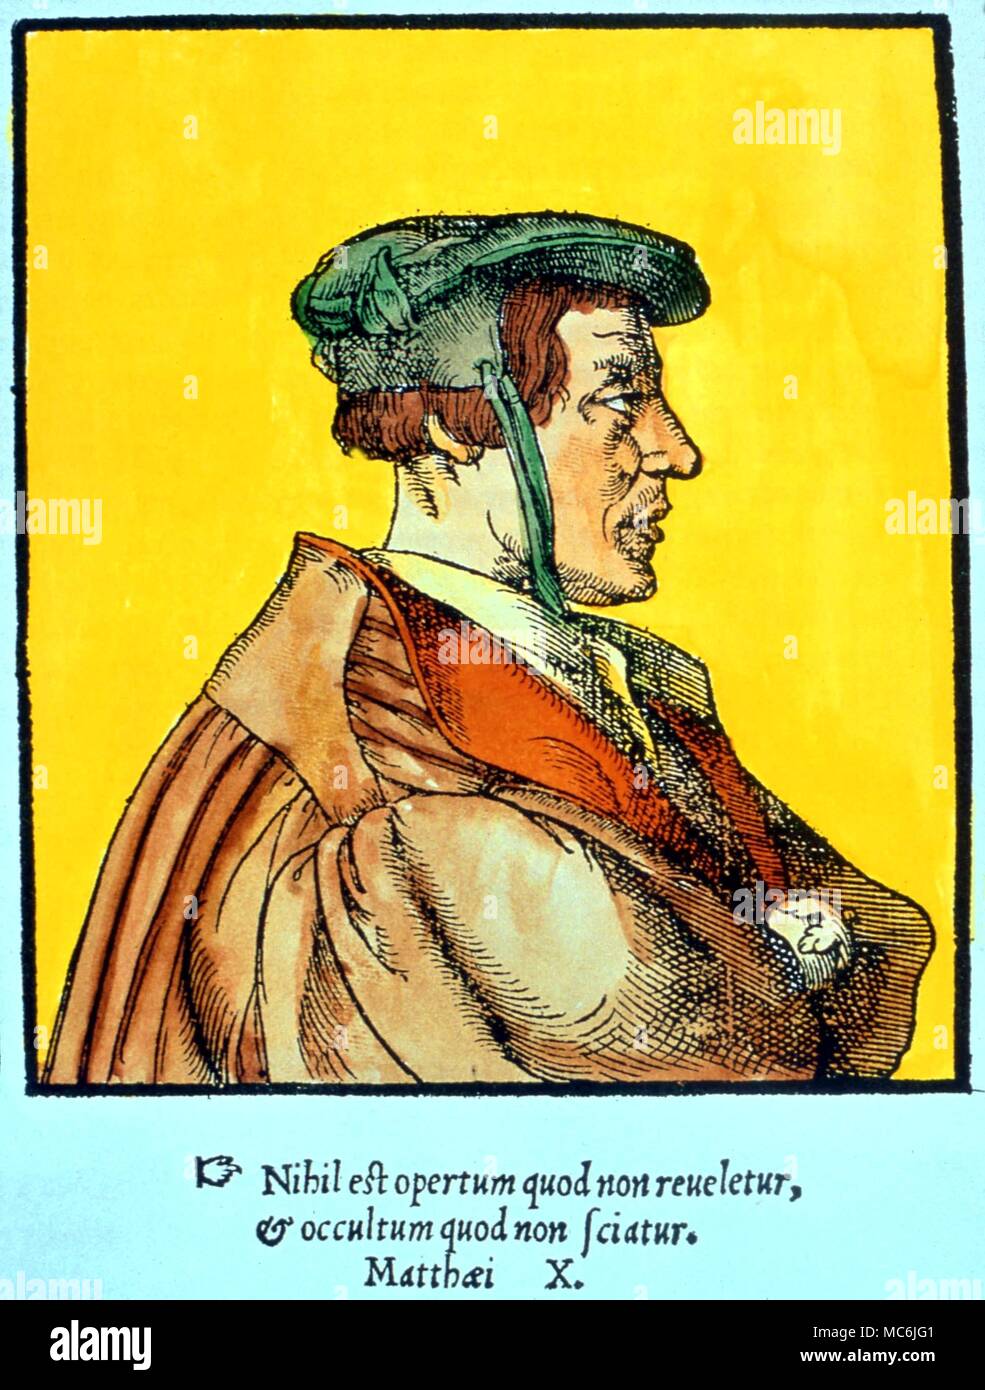 Okkultisten - Agrippa. Portrait von Cornelius Agrippa (1486-1535), in seinem persönlichen Horoskop, Cast für September 1486. Aus dem 17. Jahrhundert Gravur in vielleicht der "Abbildung der okkulten Künste' Stockfoto